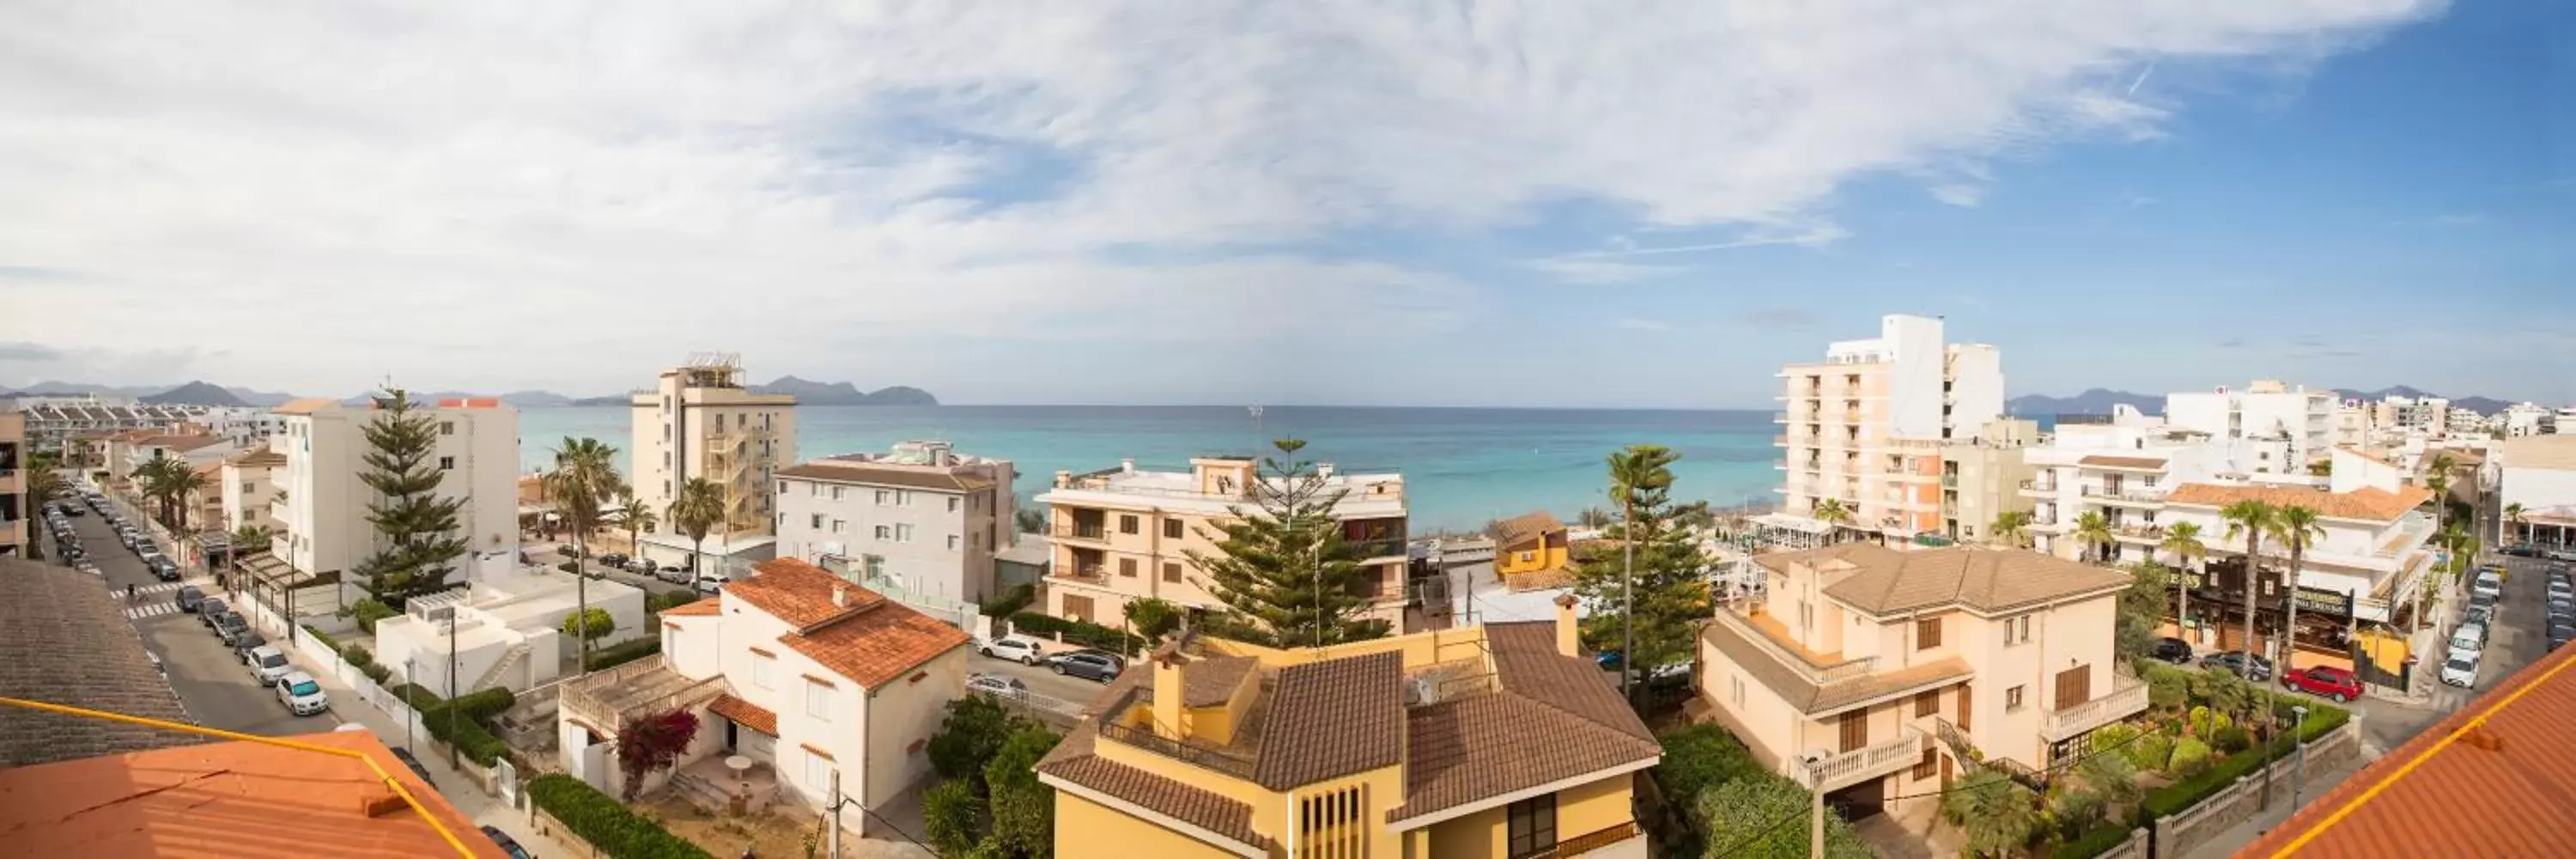 Sea view in Hotel Villa Barbara